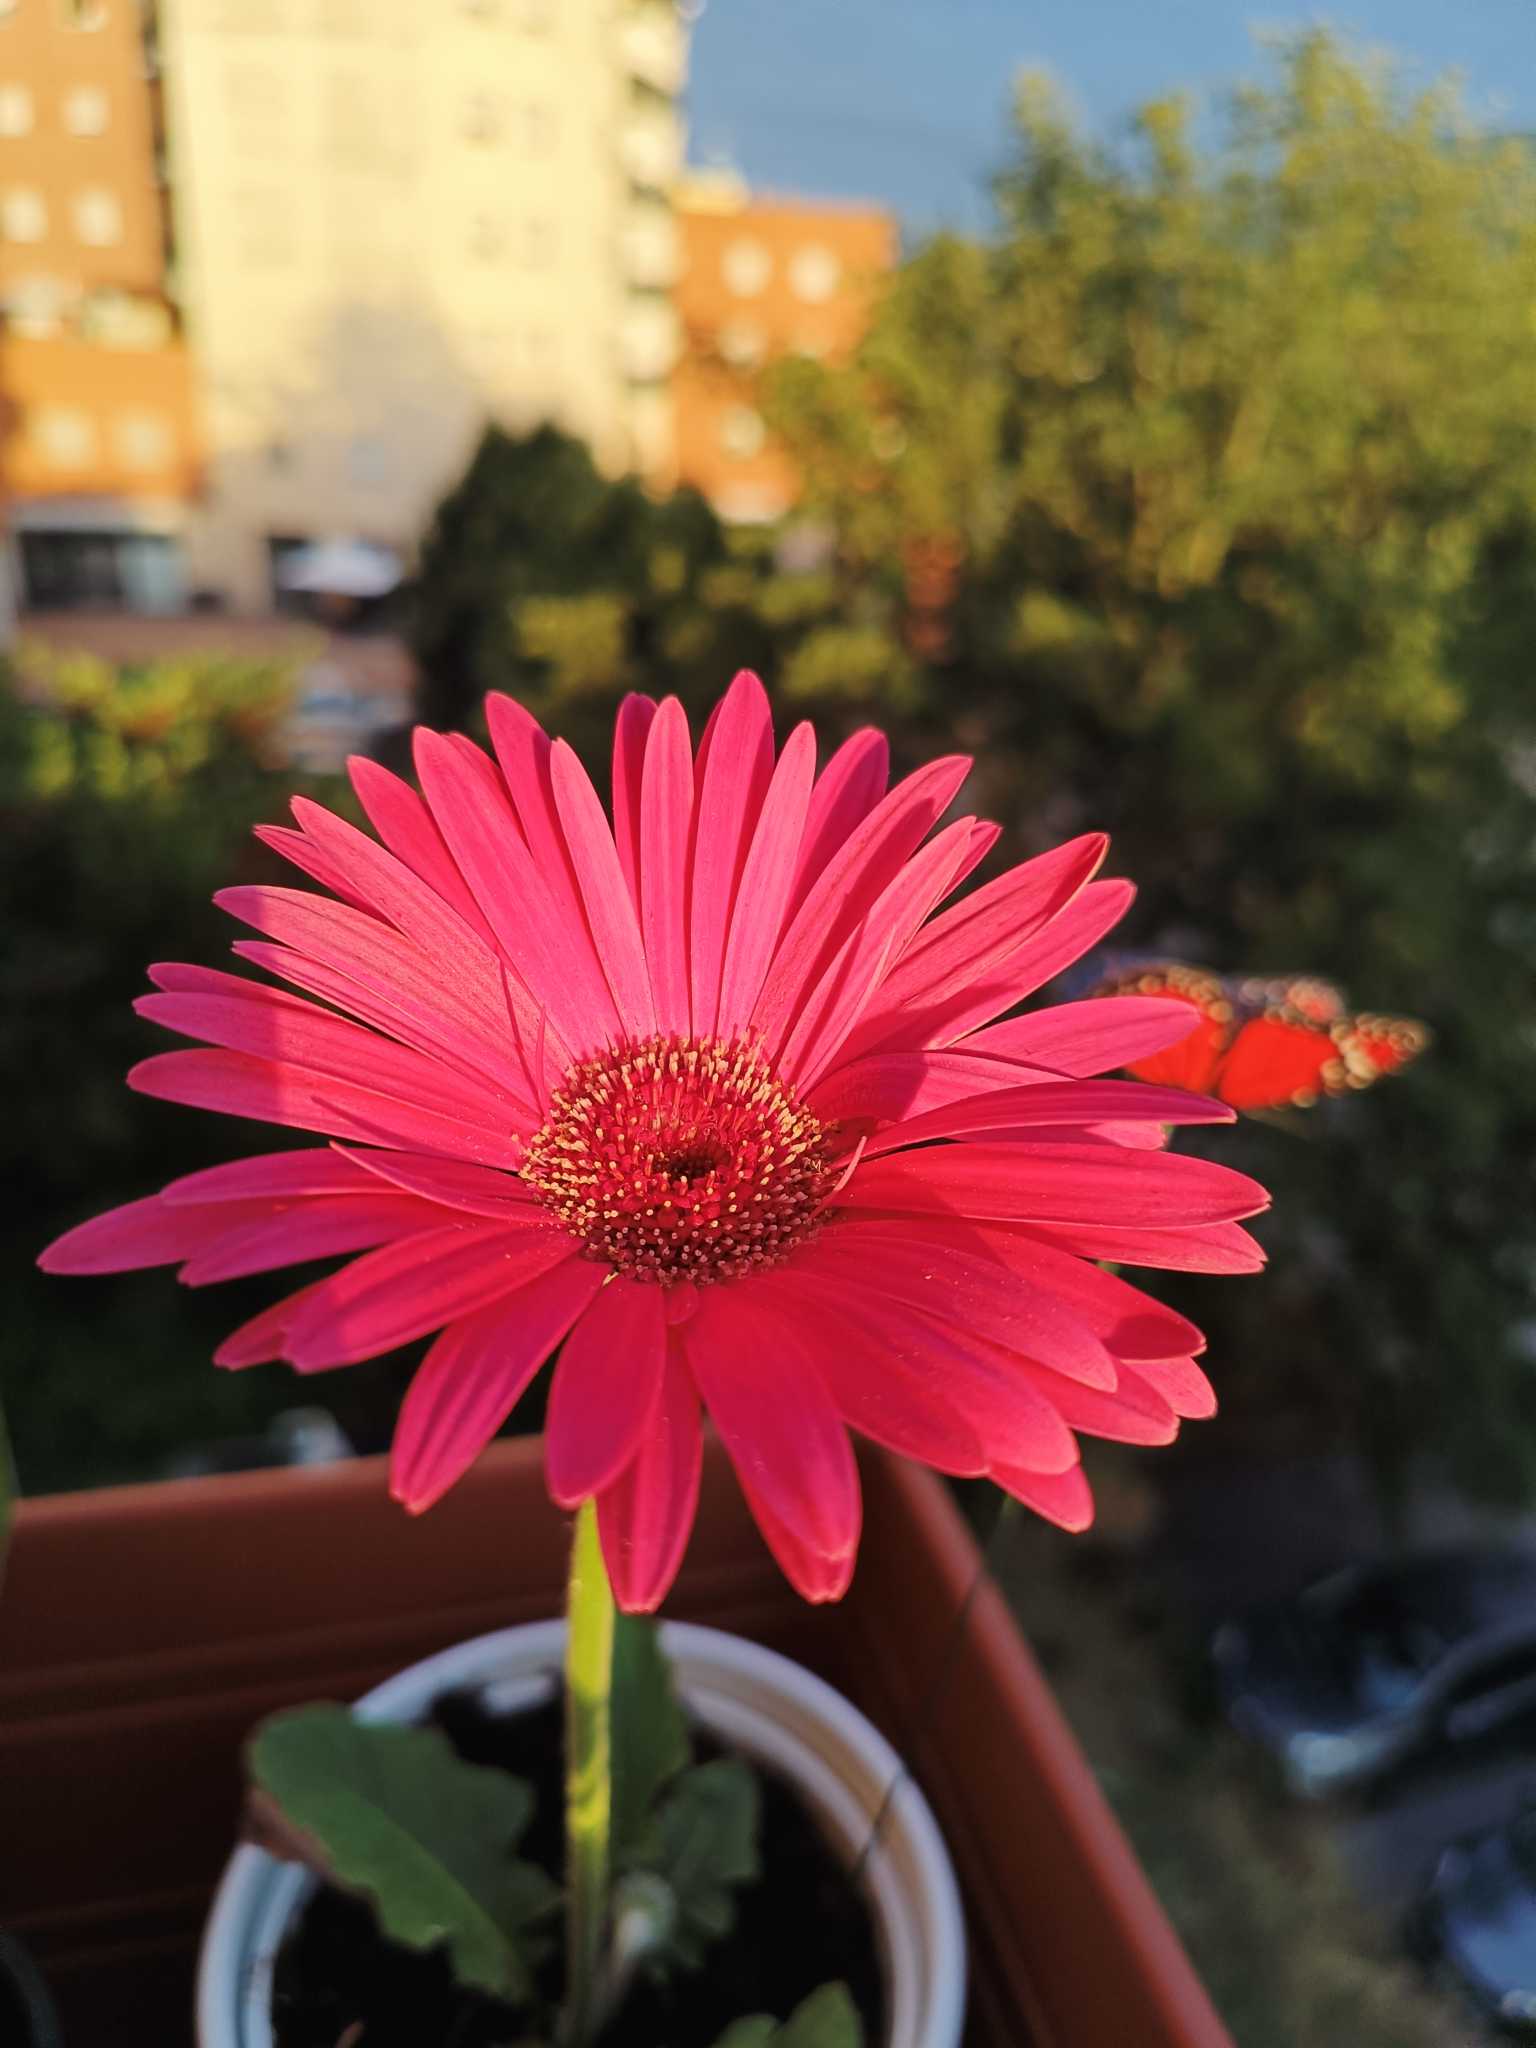 Summer's flower